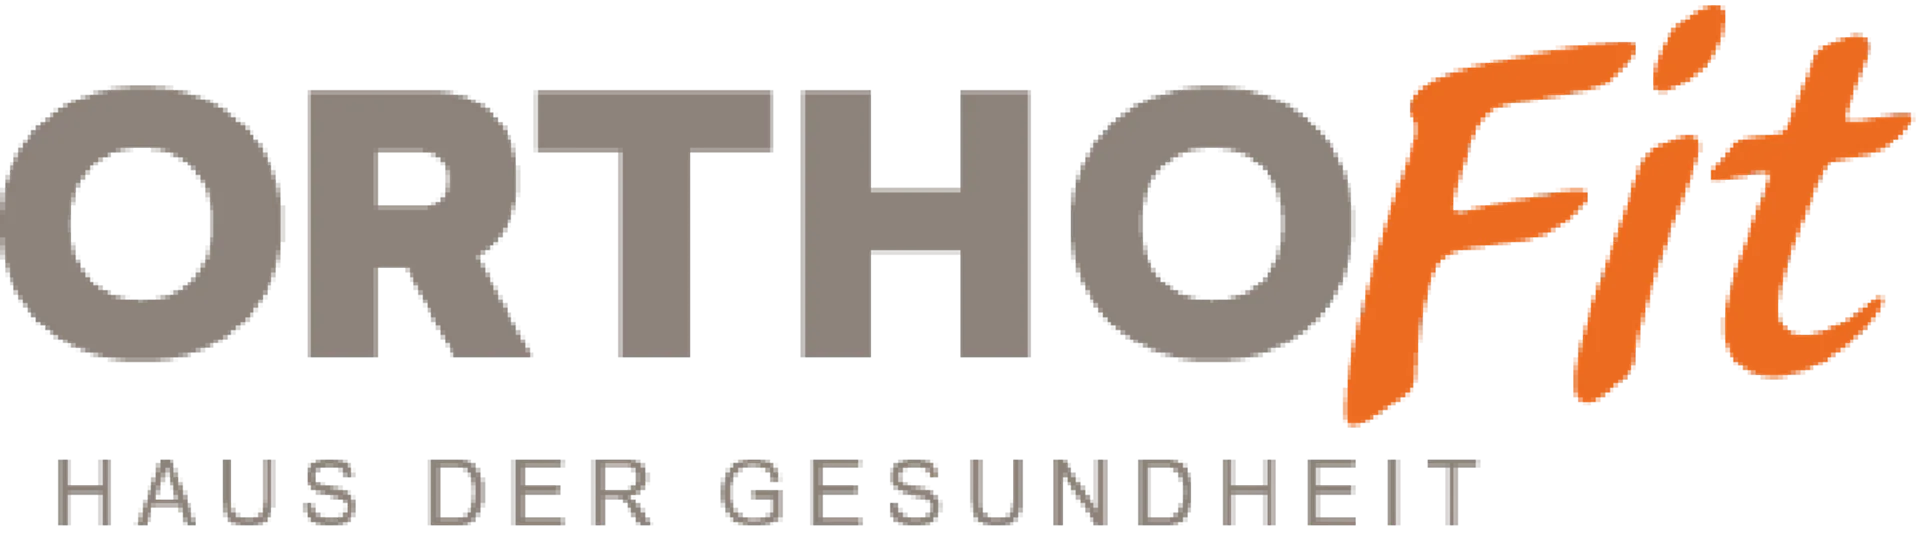 ORTHOFIT logo die aktuell Flugblatt